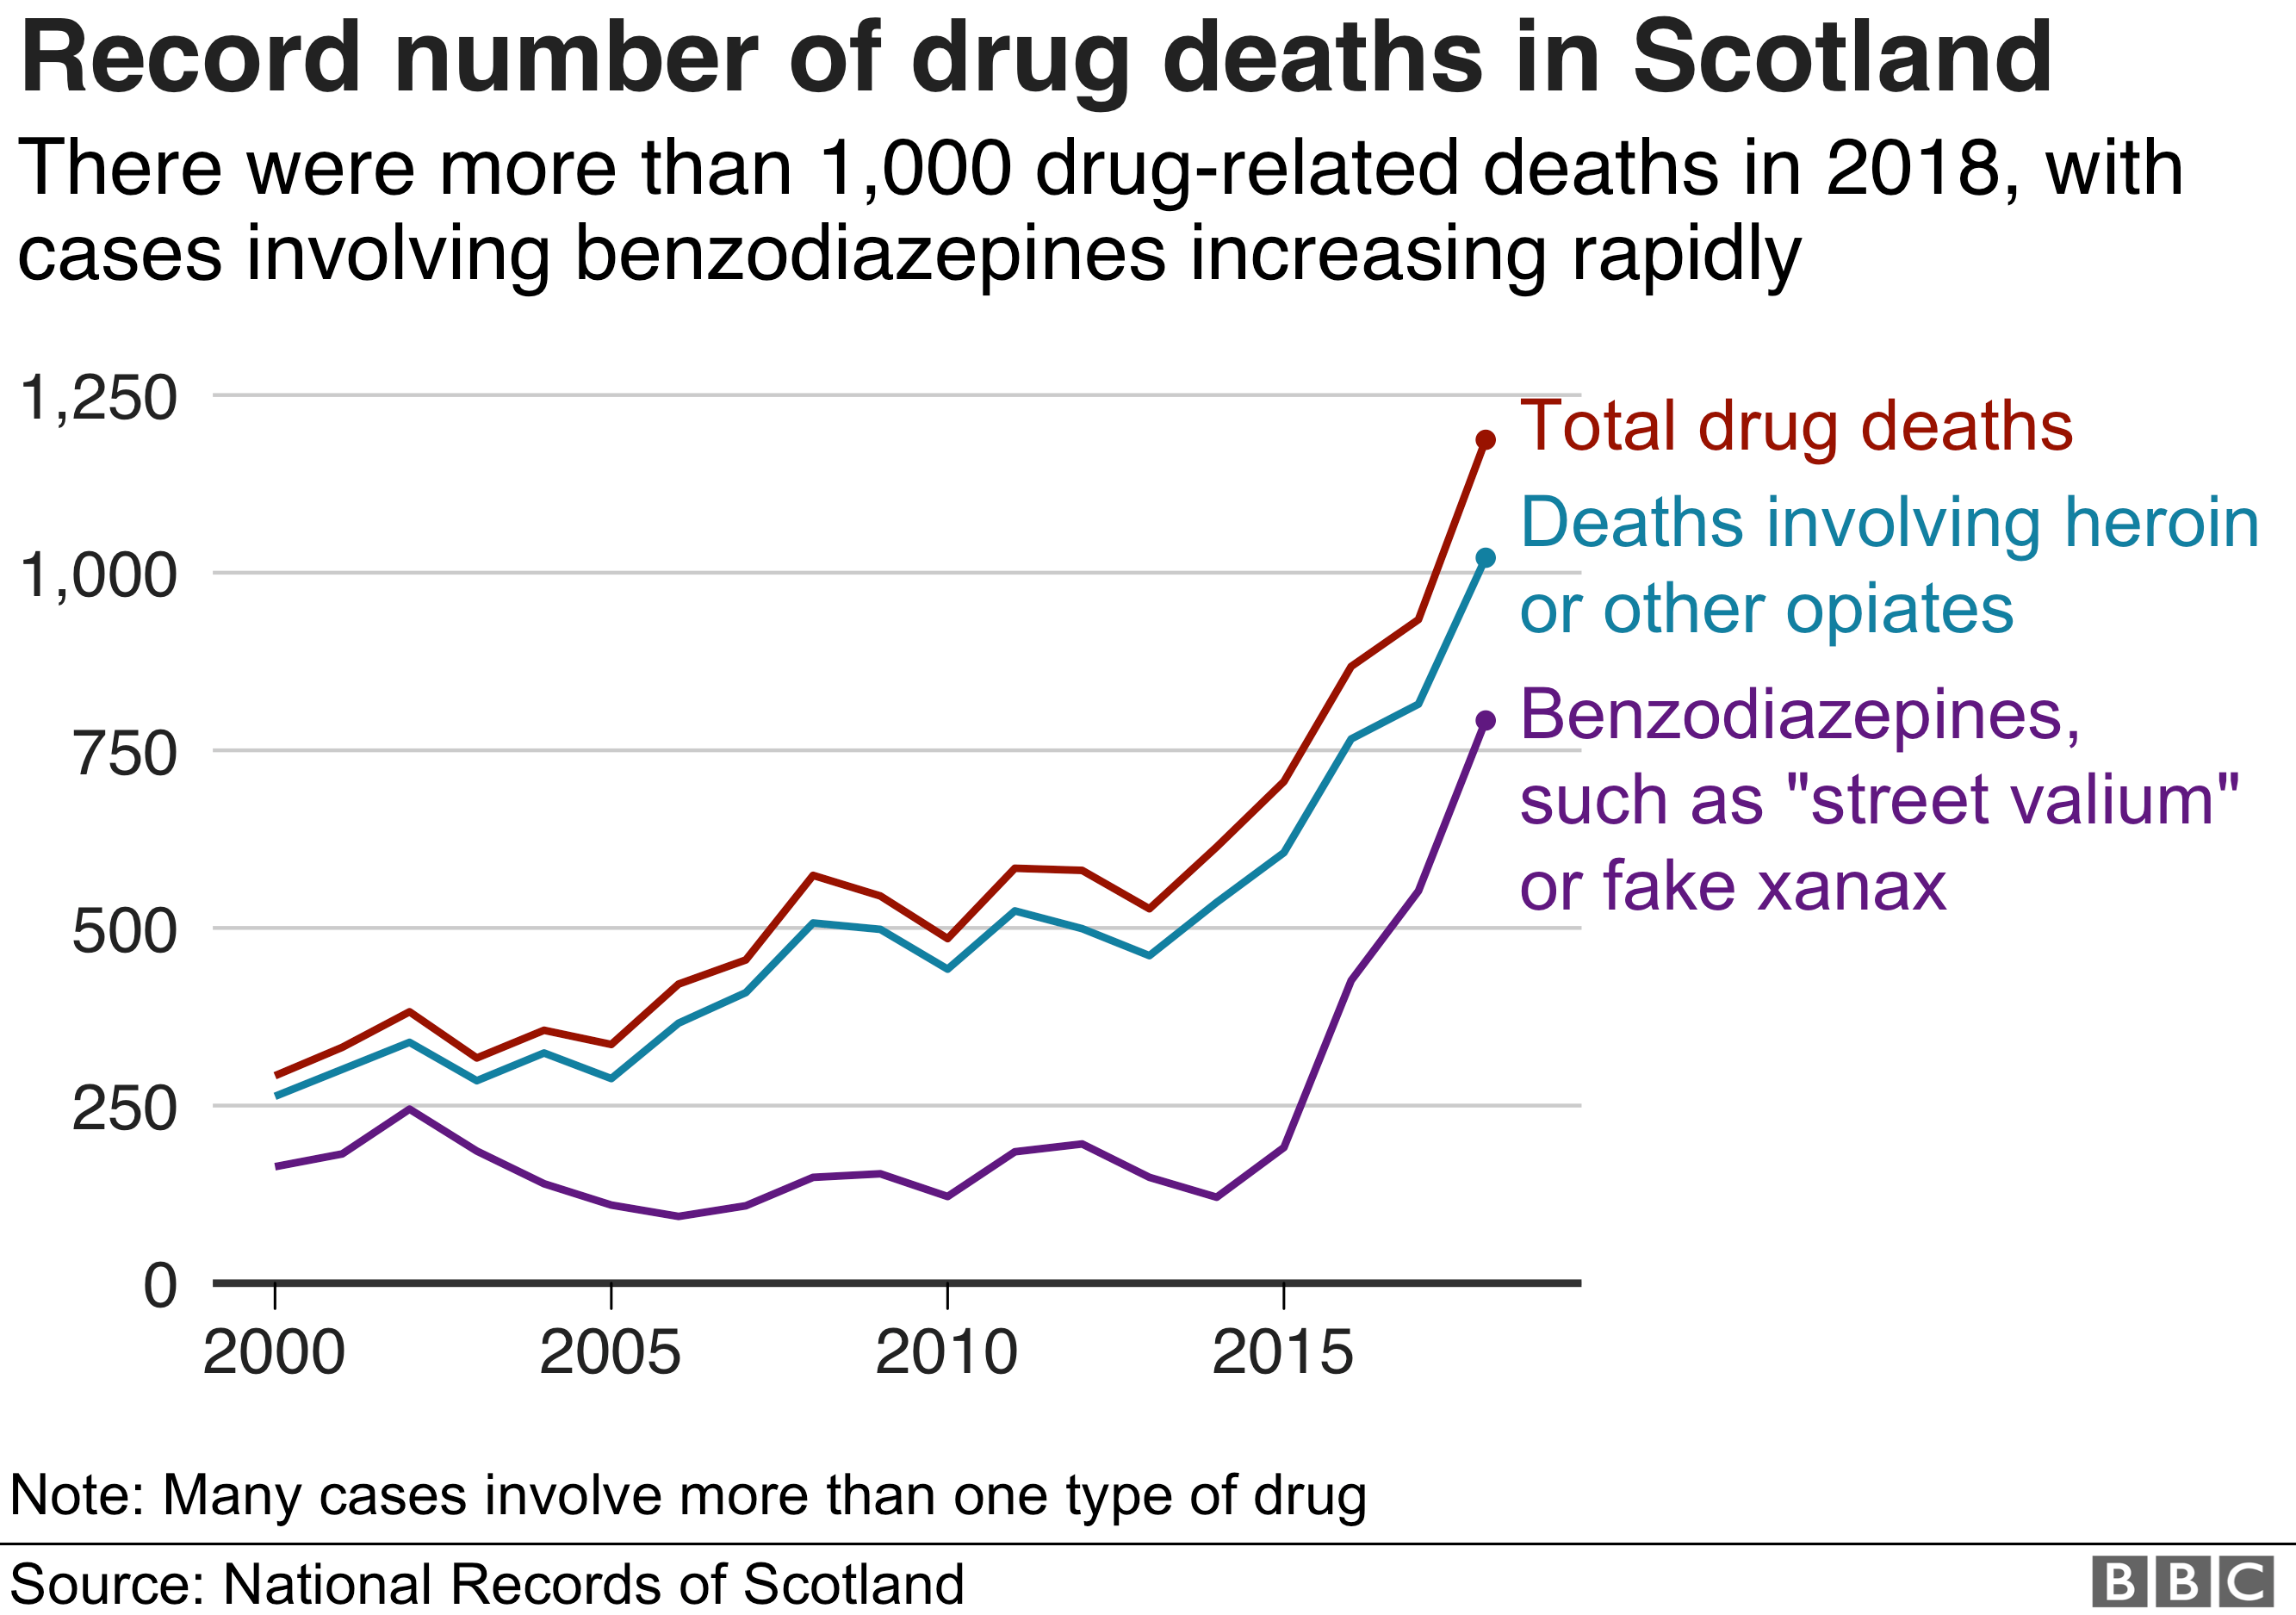 Число смертей от наркотиков в Шотландии снова резко выросло, впервые превысив 1000. Число смертей от героина также превысило 1000 человек по сравнению с 840 в прошлом году. Число смертей, связанных с бензодиазепинами, увеличилось до 797 с 555 в 2017 году